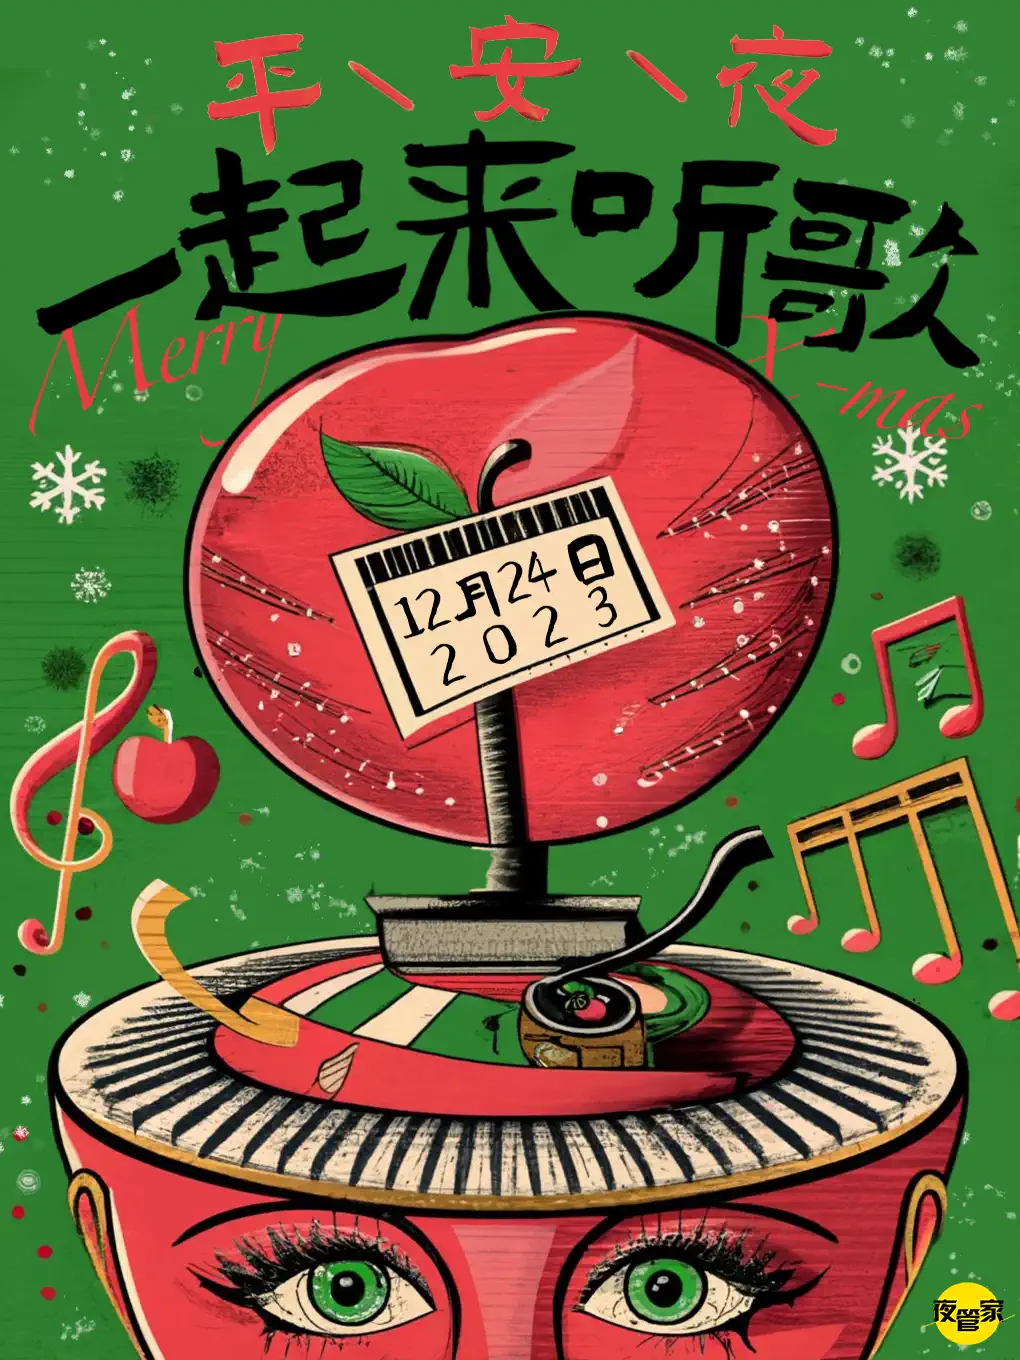 武汉平安夜一起来听歌——与crush一起燃燥圣诞！钟声响起音乐狂欢！